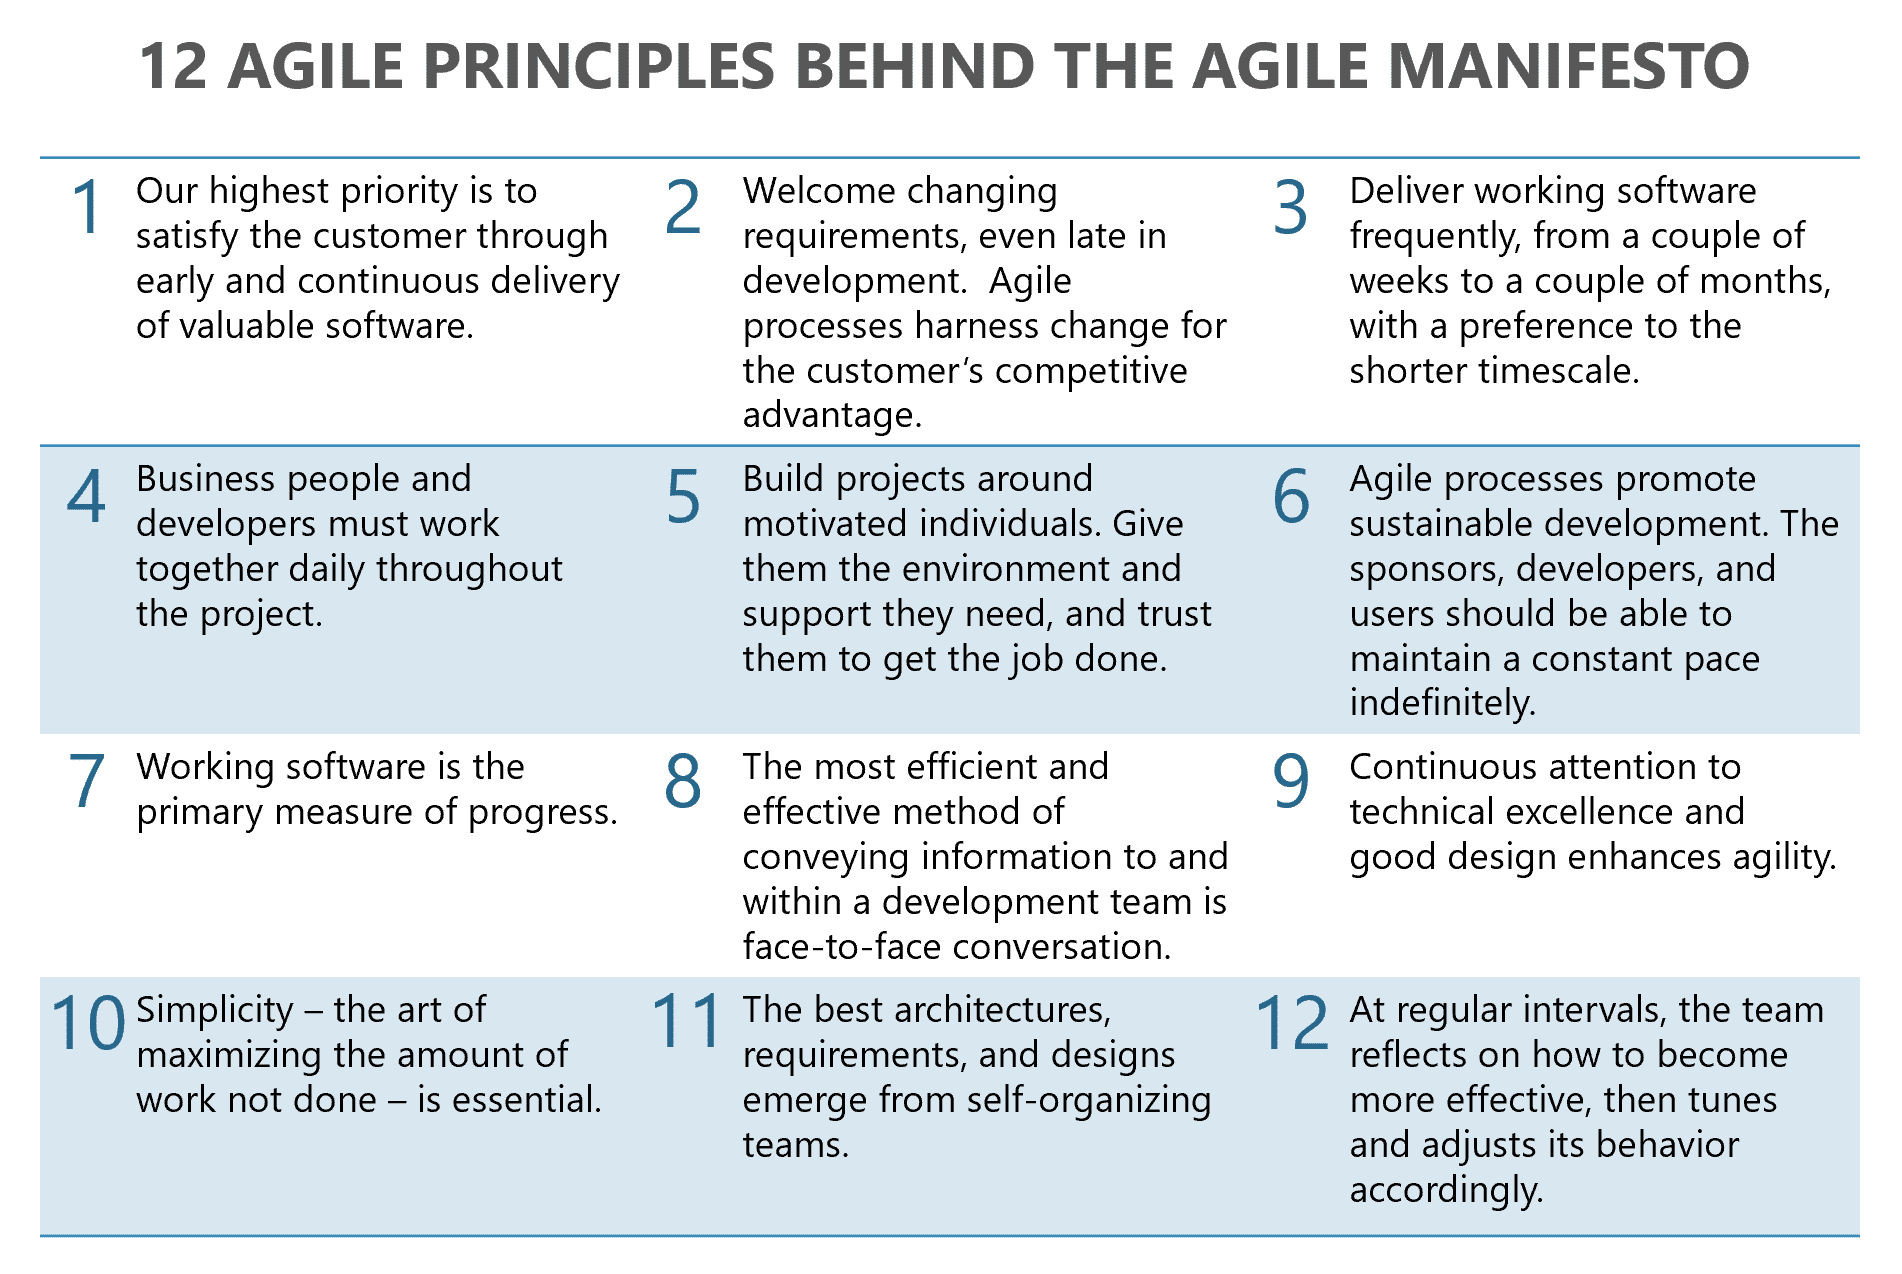 12 agile principles behind the agile manifesto